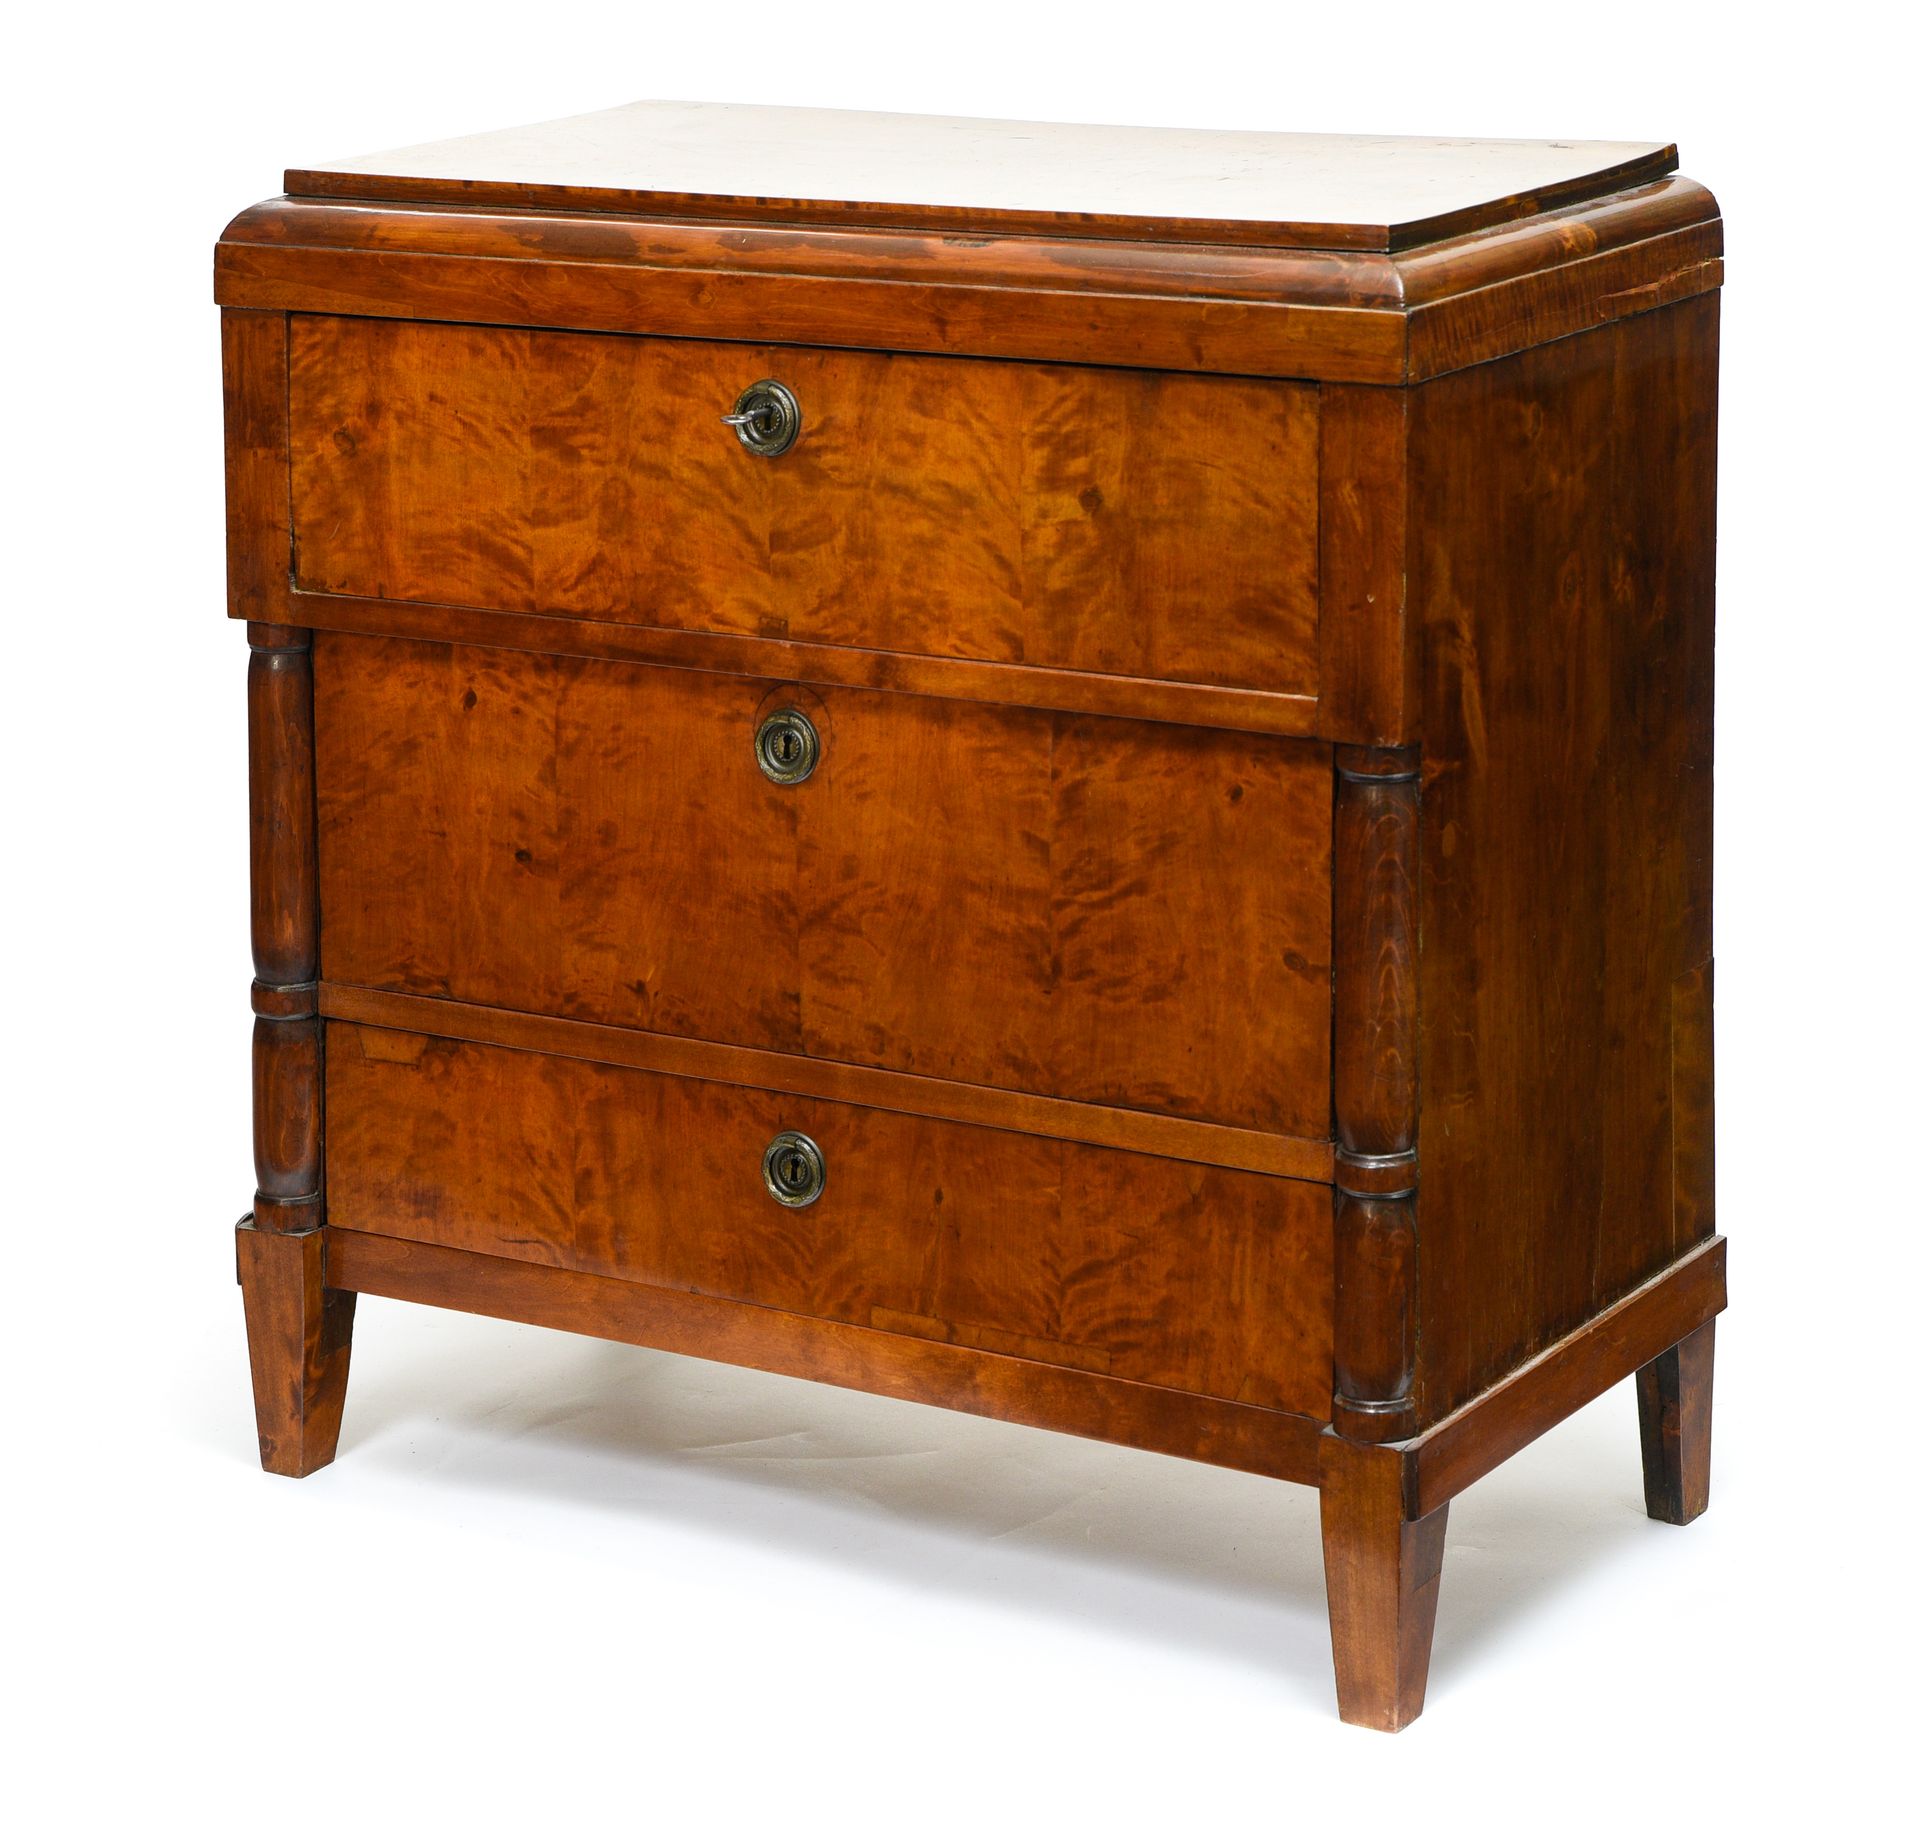 Null 19世纪的作品

秘书的抽屉柜



桃花心木，有两个抽屉，一个抽屉里露出一个秘书。

 高：87厘米 宽：87厘米 深：43厘米